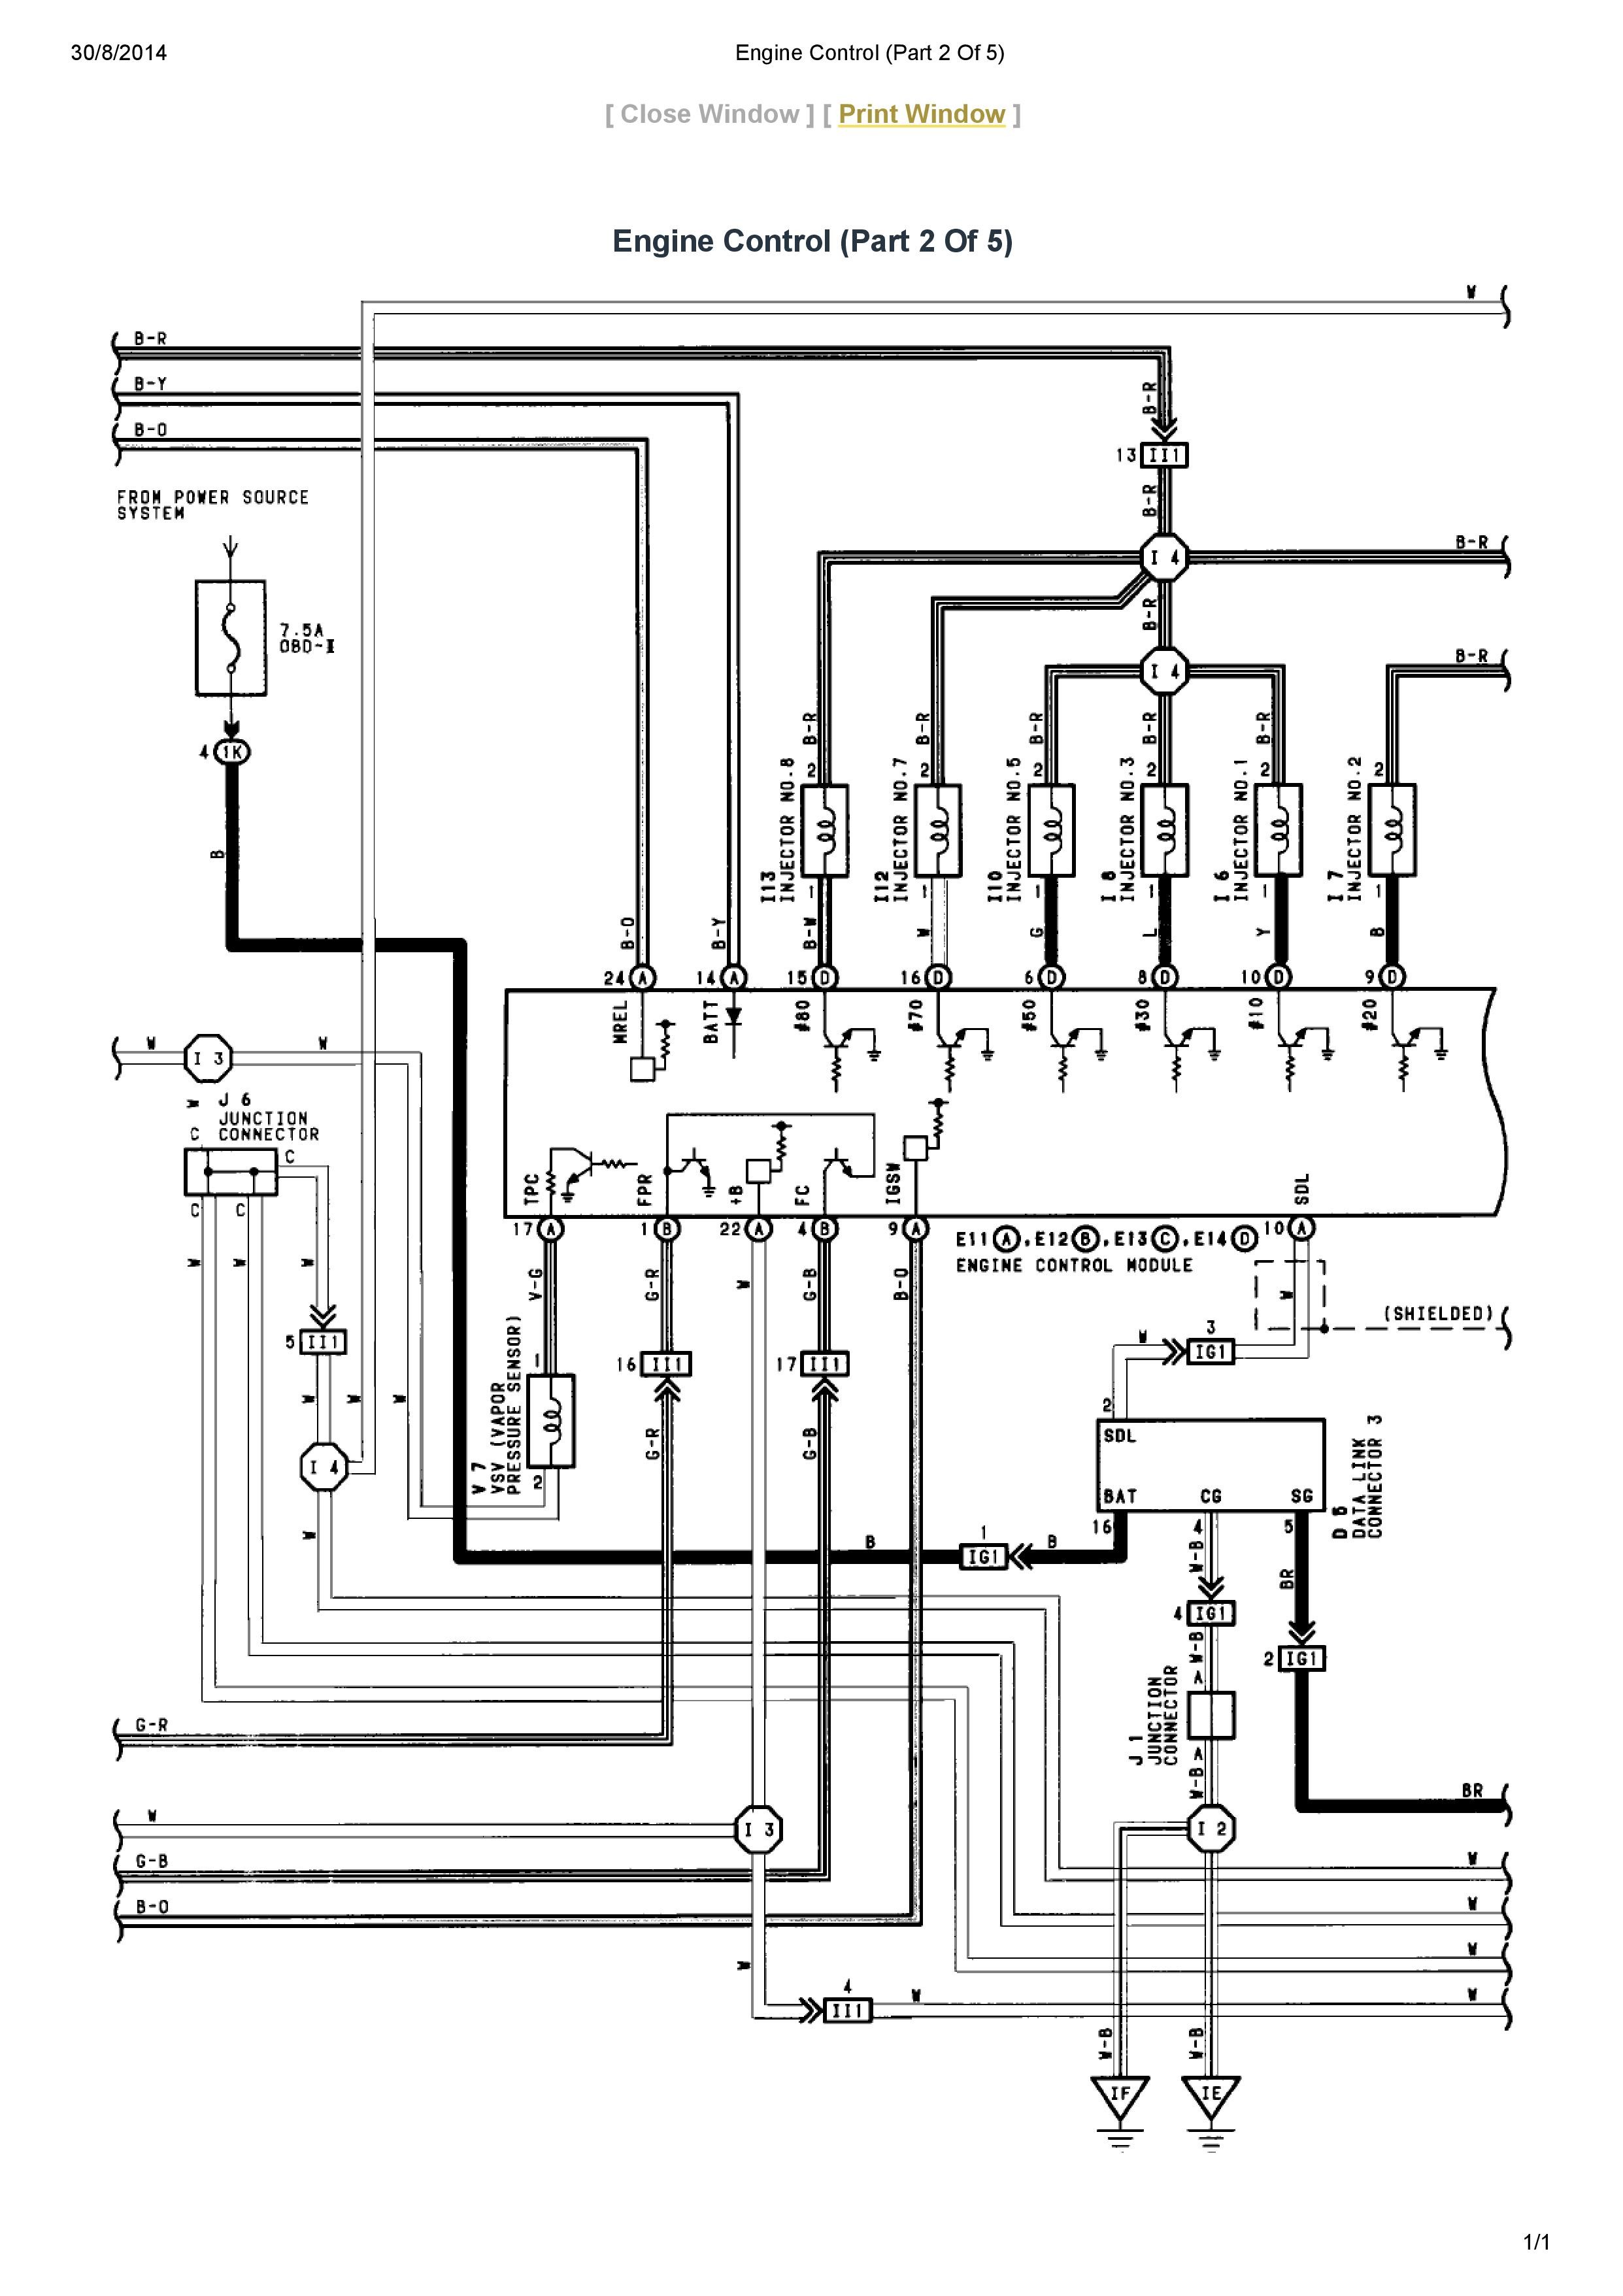 Wiring Diagram Lexu 2000 - Wiring Diagram Schema